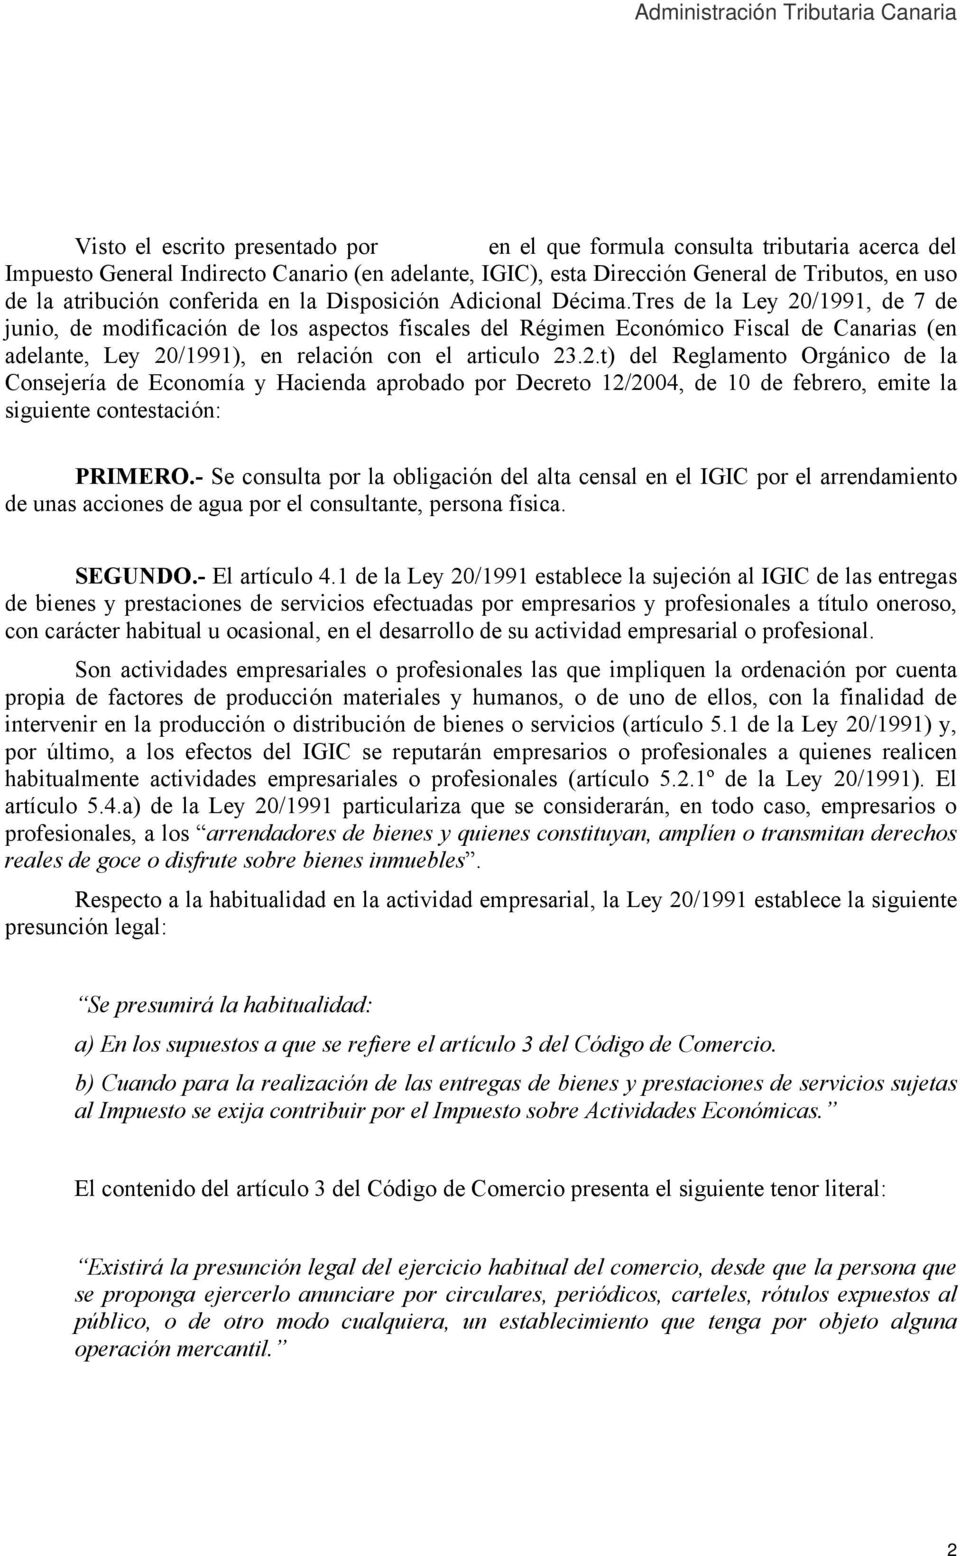 Tres de la Ley 20/1991, de 7 de junio, de modificación de los aspectos fiscales del Régimen Económico Fiscal de Canarias (en adelante, Ley 20/1991), en relación con el articulo 23.2.t) del Reglamento Orgánico de la Consejería de Economía y Hacienda aprobado por Decreto 12/2004, de 10 de febrero, emite la siguiente contestación: PRIMERO.